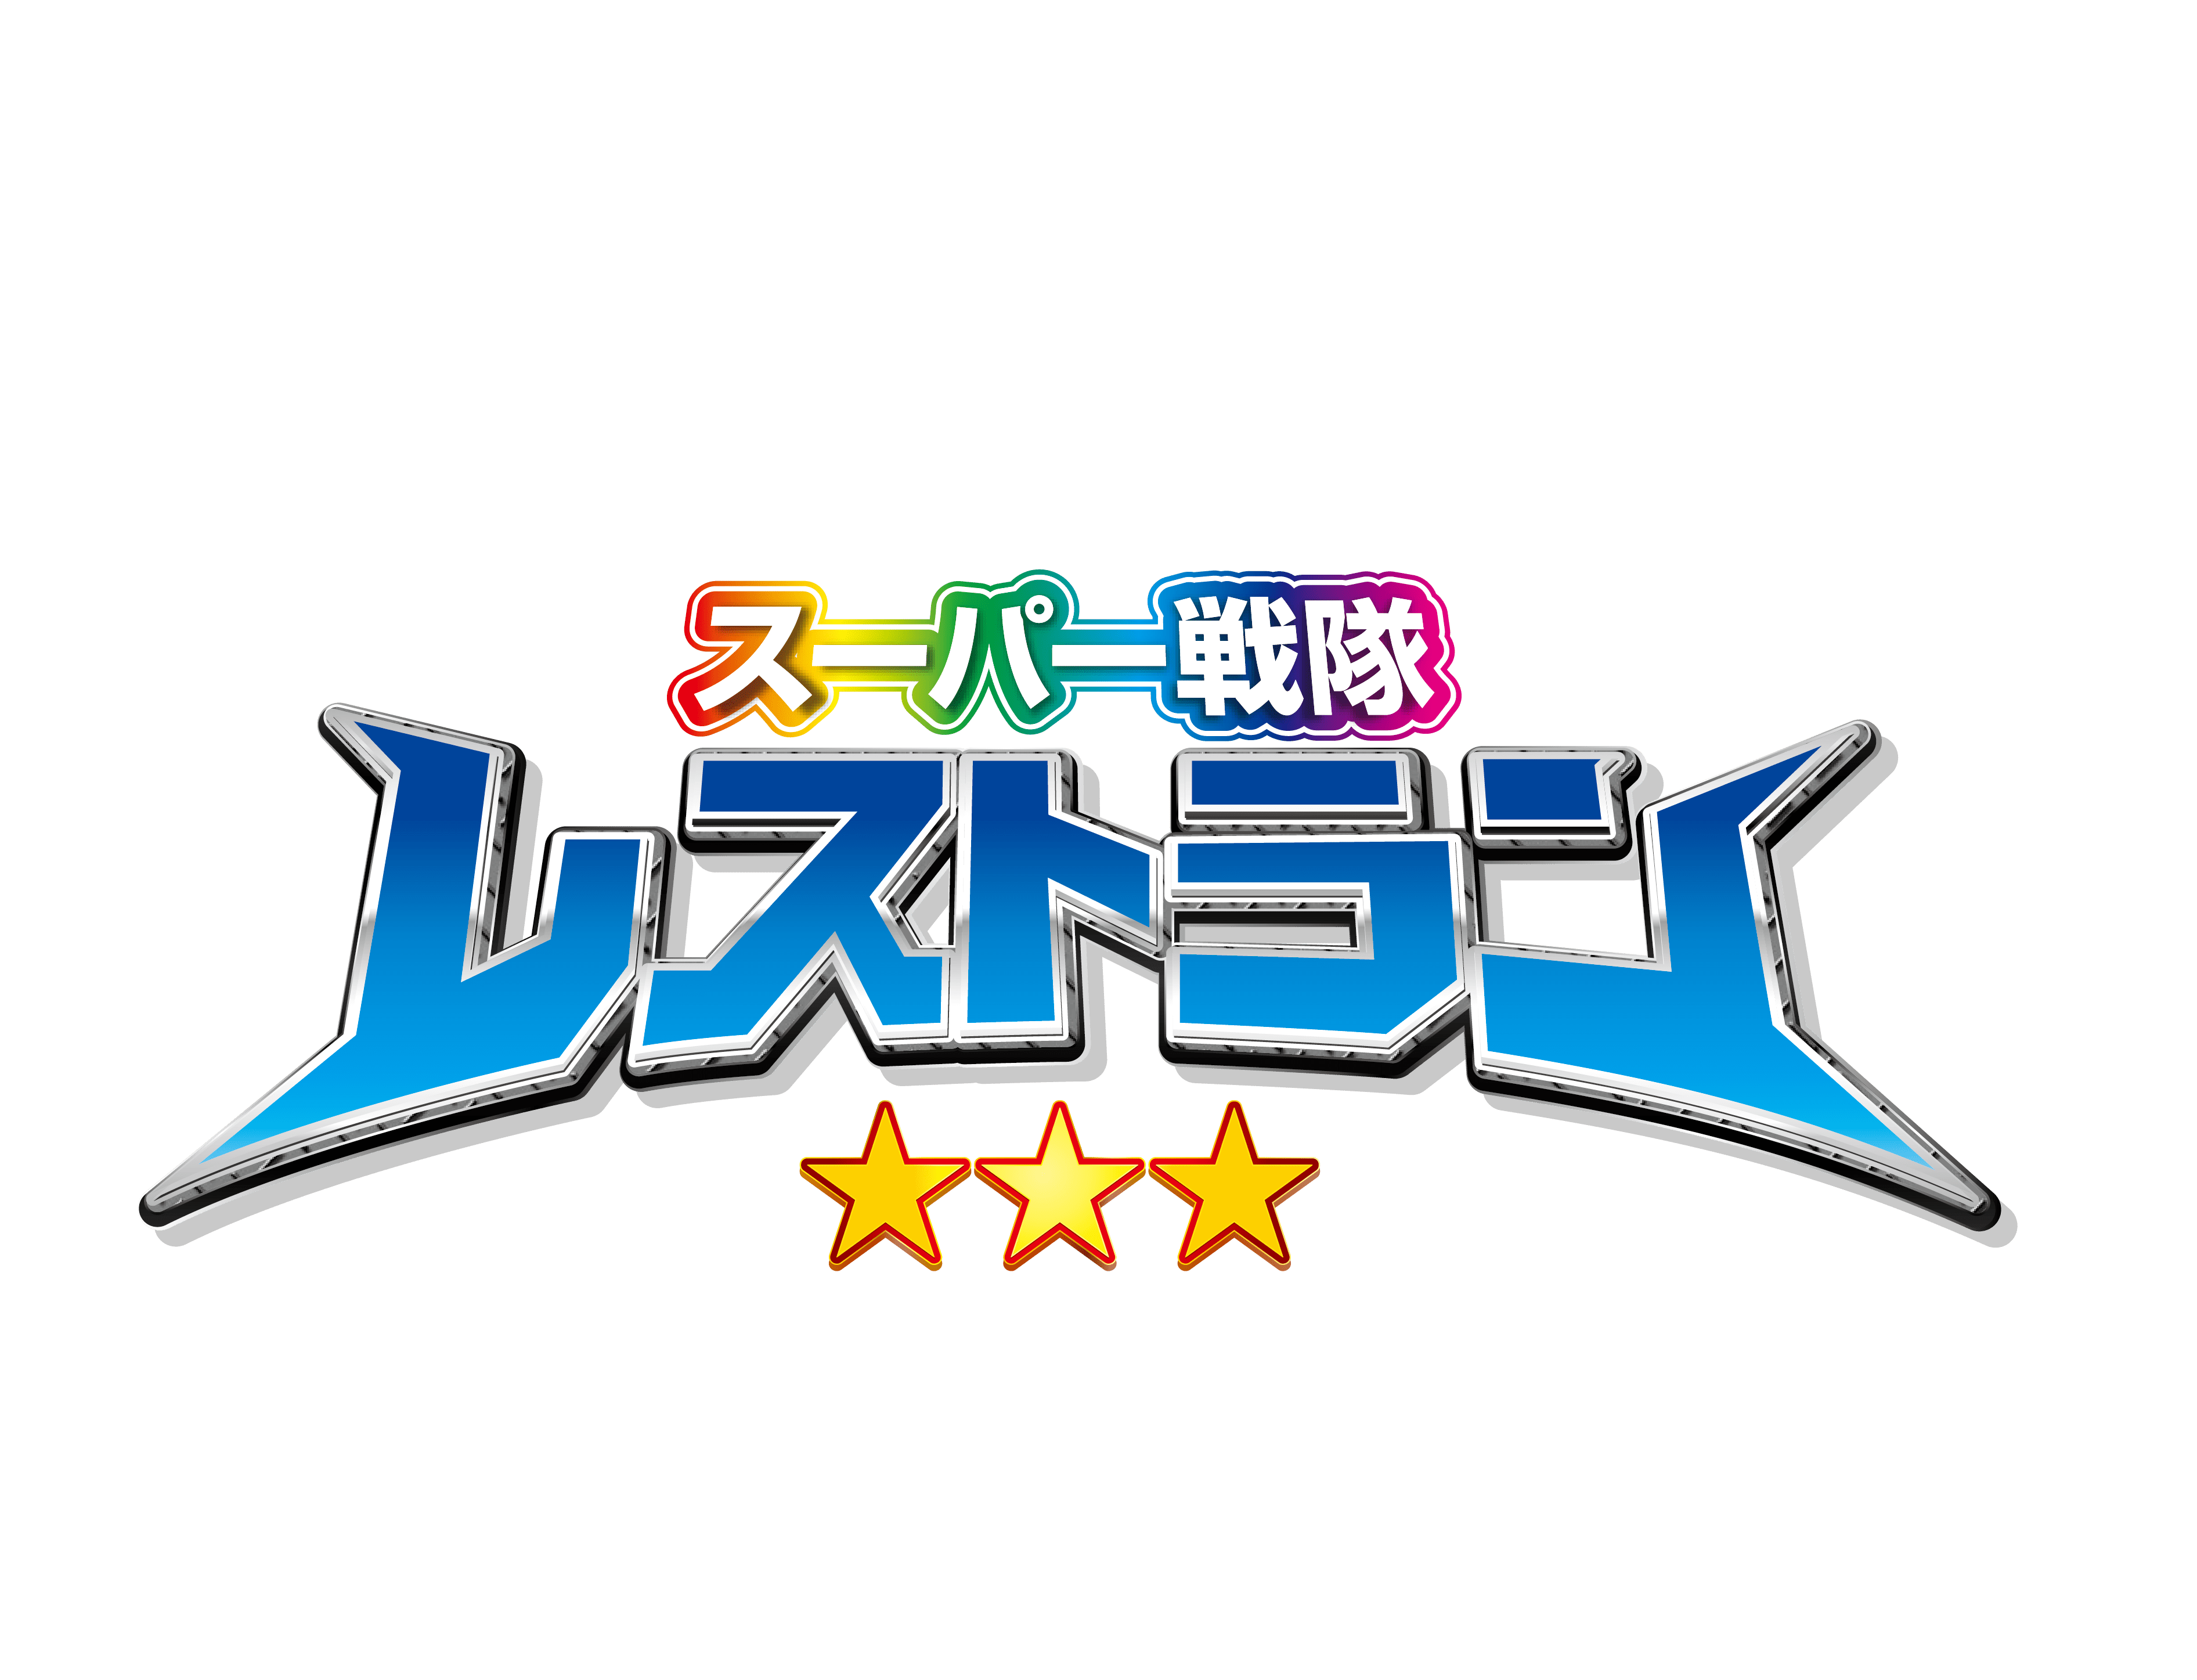 Super Sentai Restaurant logo image